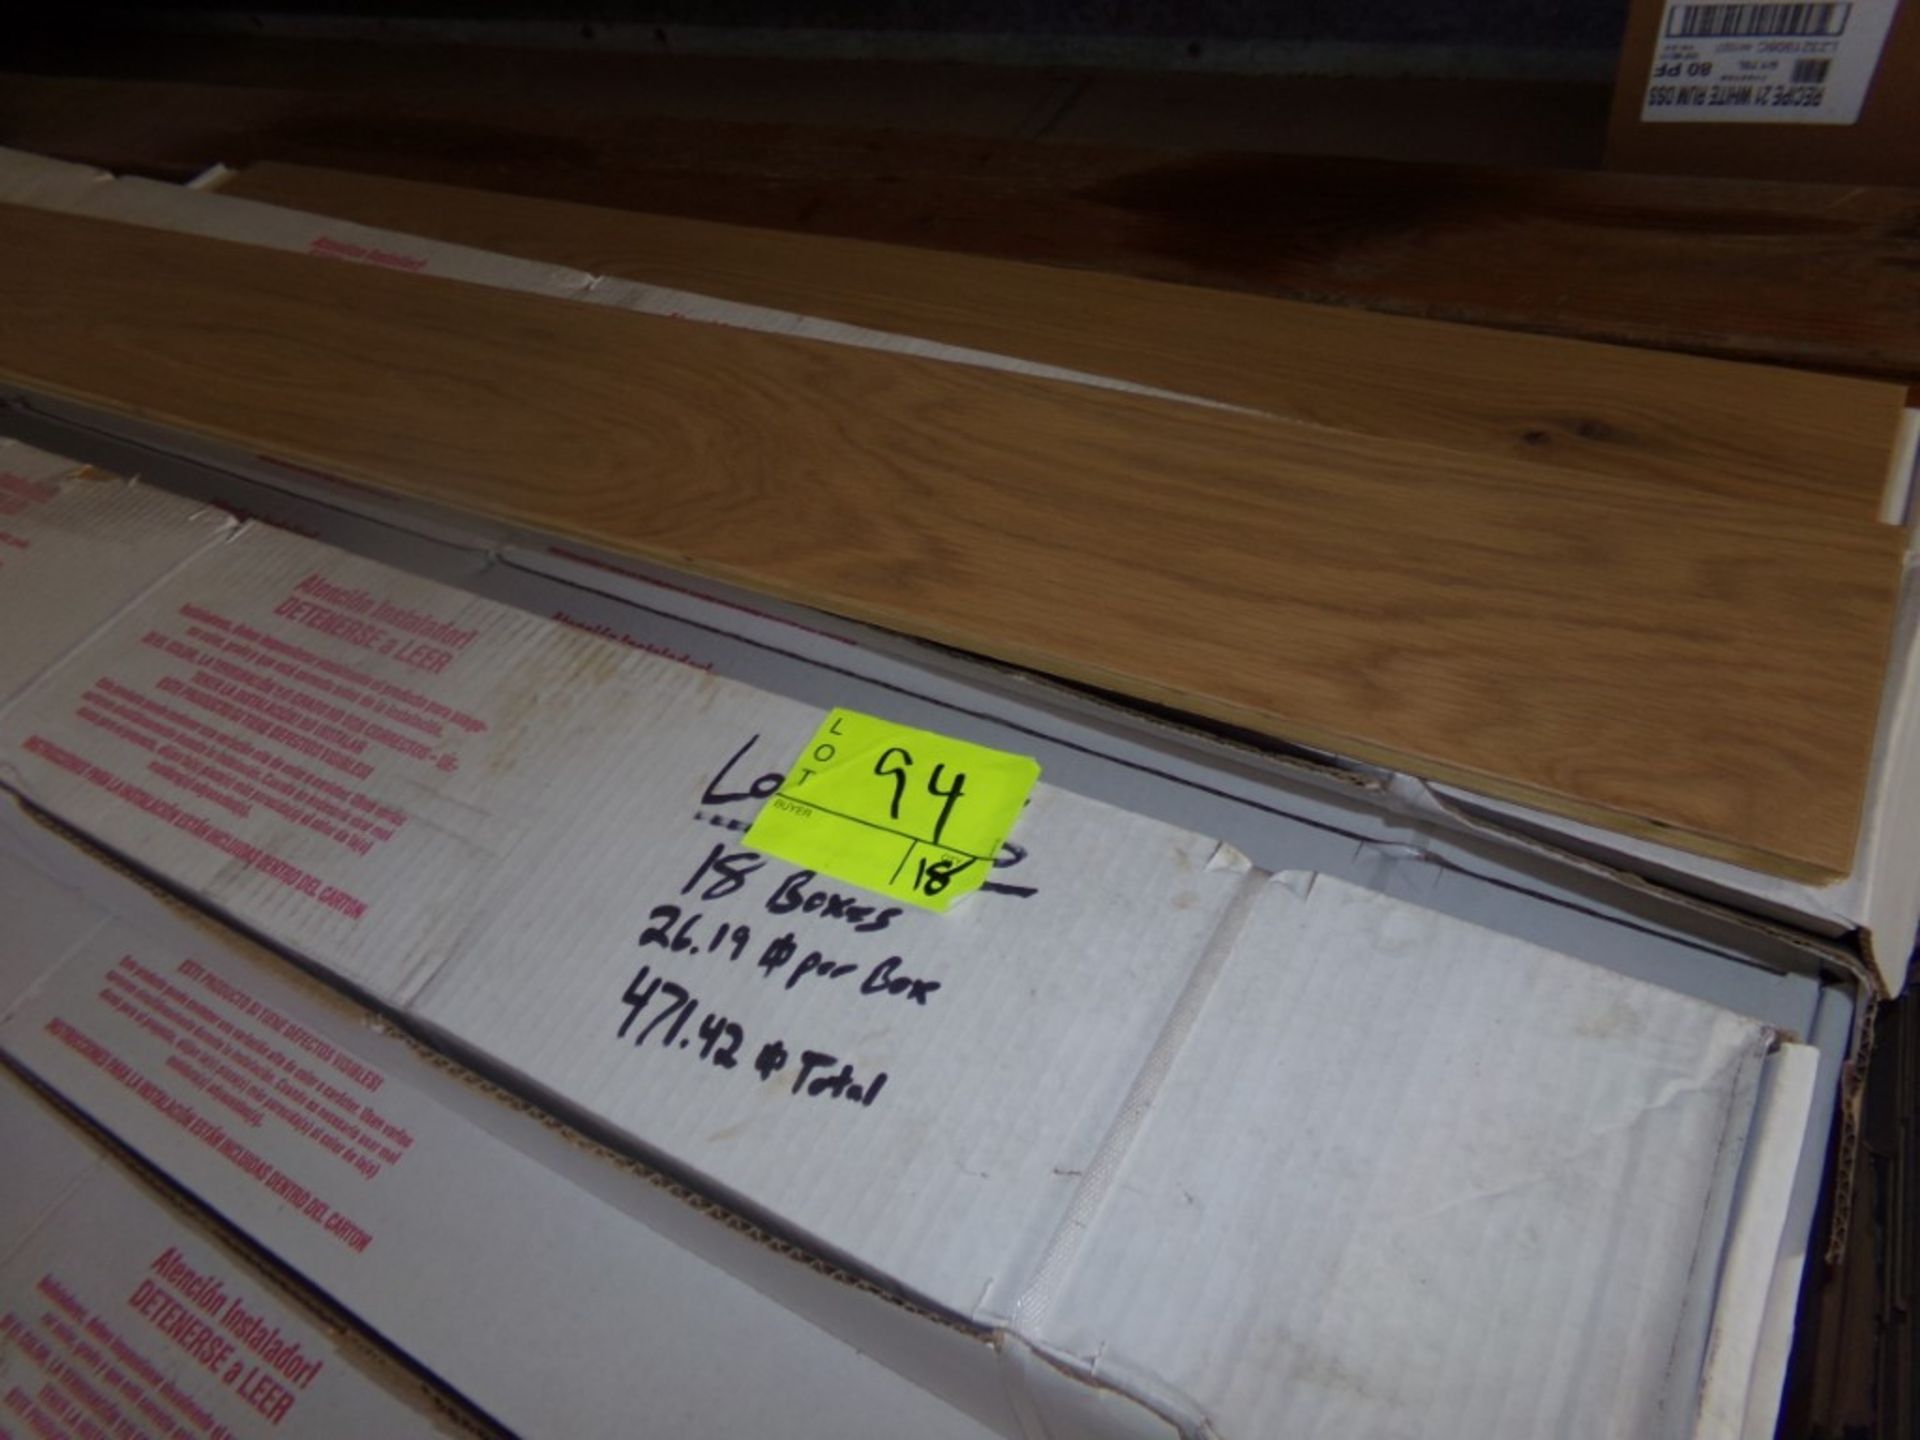 (18) Boxes, 471.42 Sq. Ft. of Cheekwood Sliced White Oak 1/2'' x 7'' x 60'' Engineered Hardwood